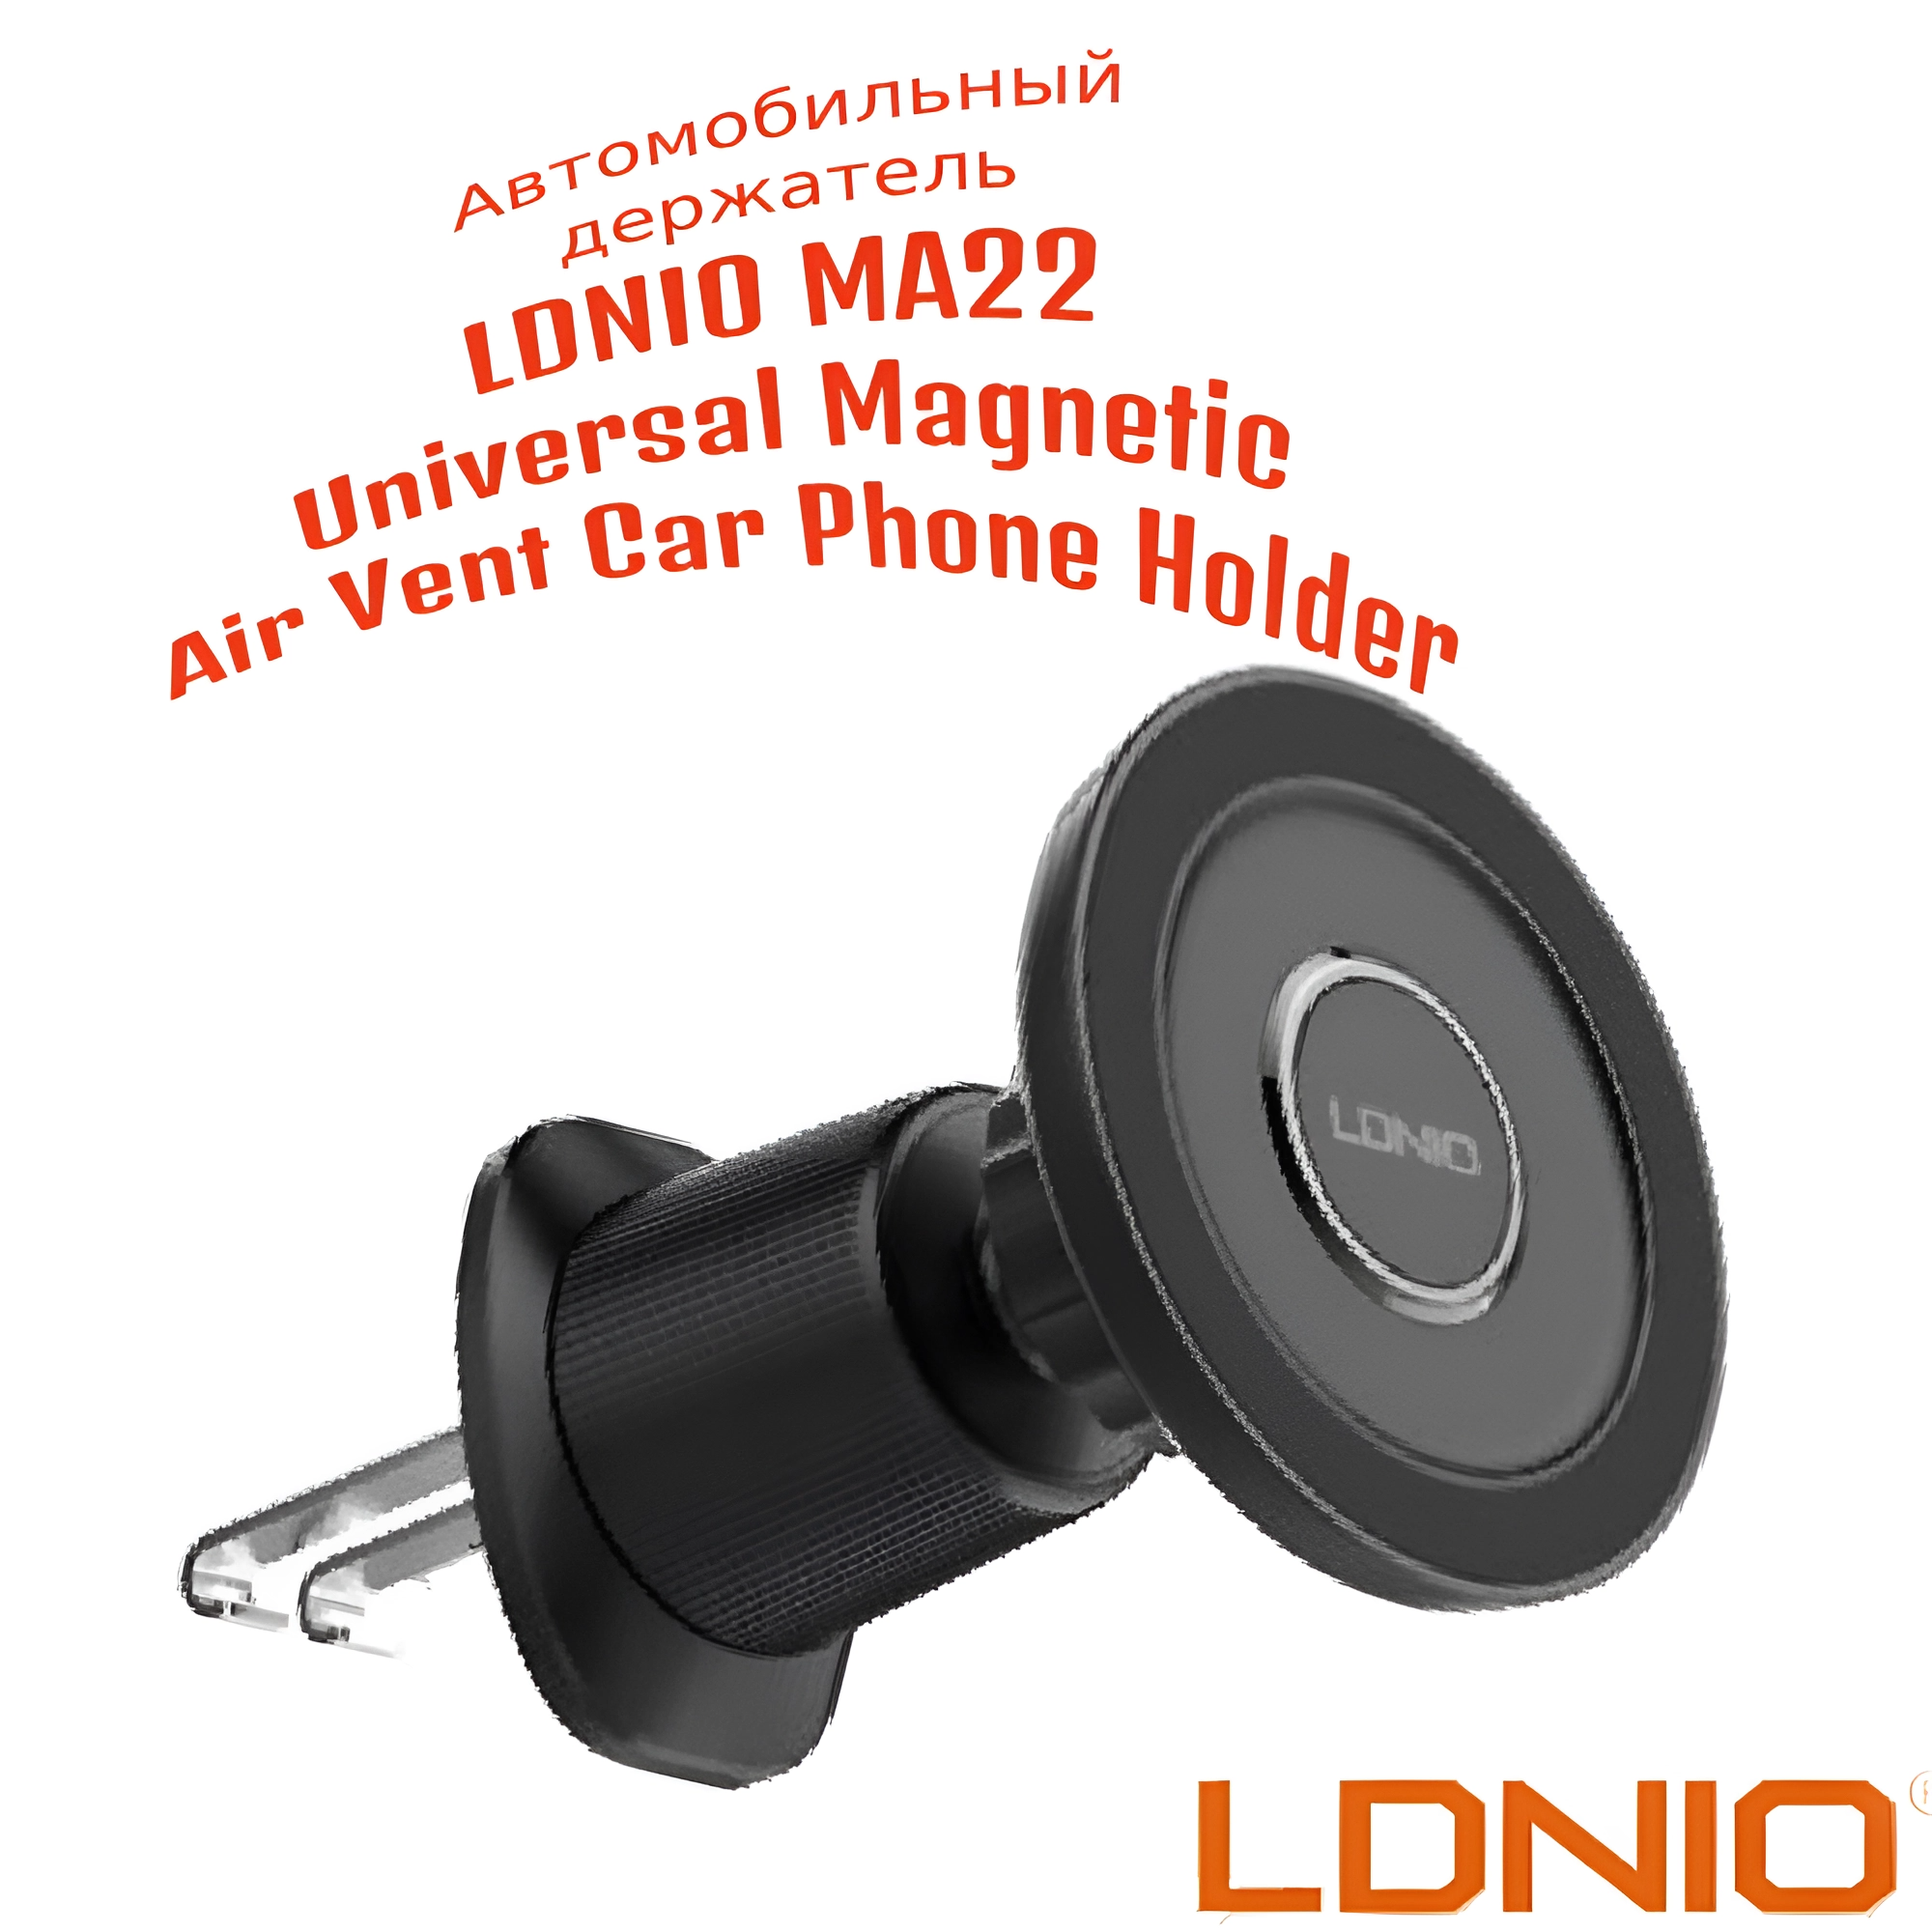 Автомобильный магнитный держатель LDNIO MA22 Universal Magnetic Air Vent Car Phone Holder